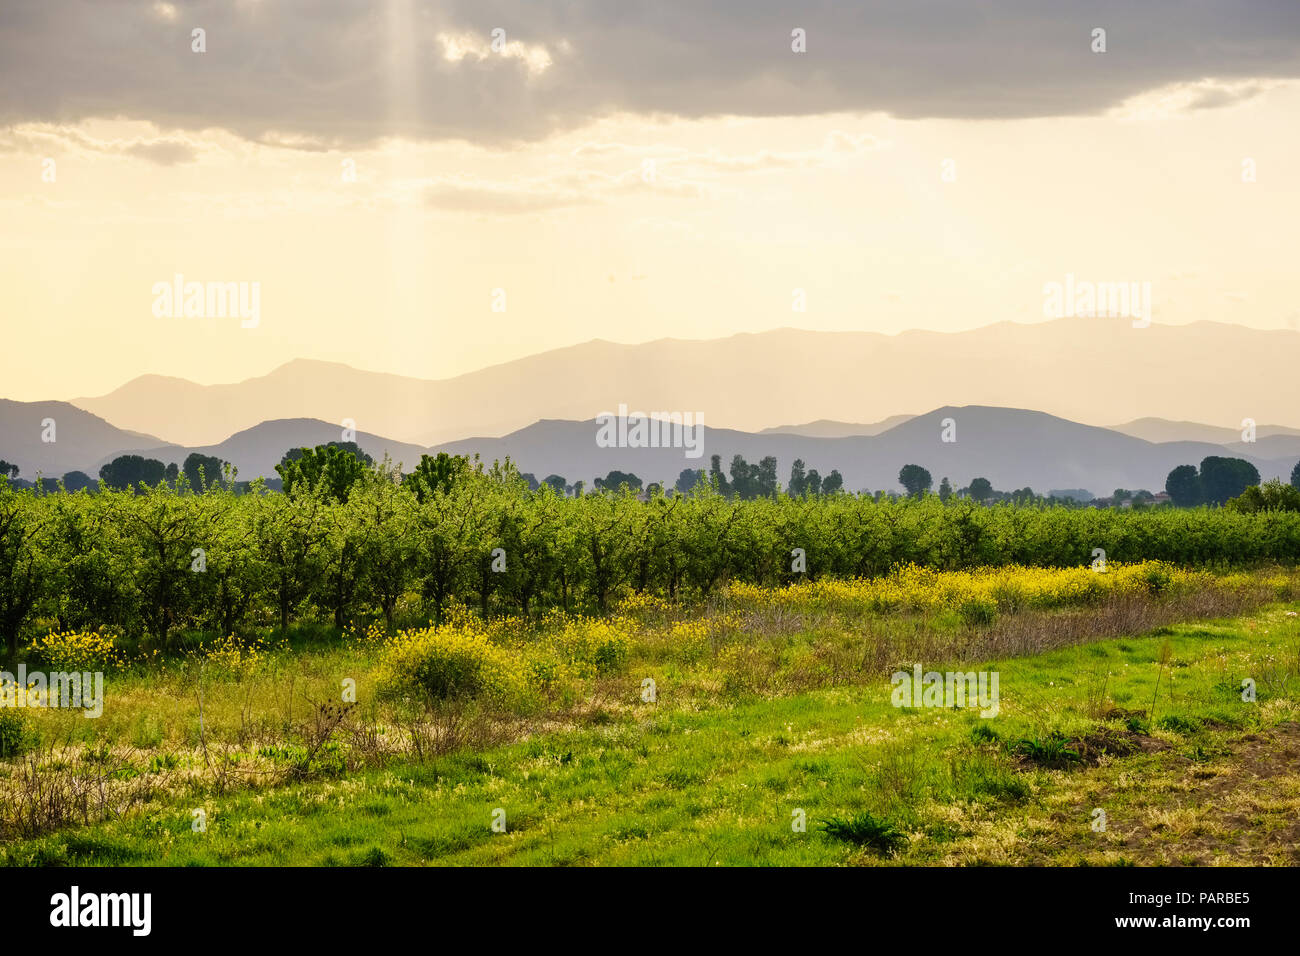 Albania, near Korca, fruit plantation, moody sky Stock Photo